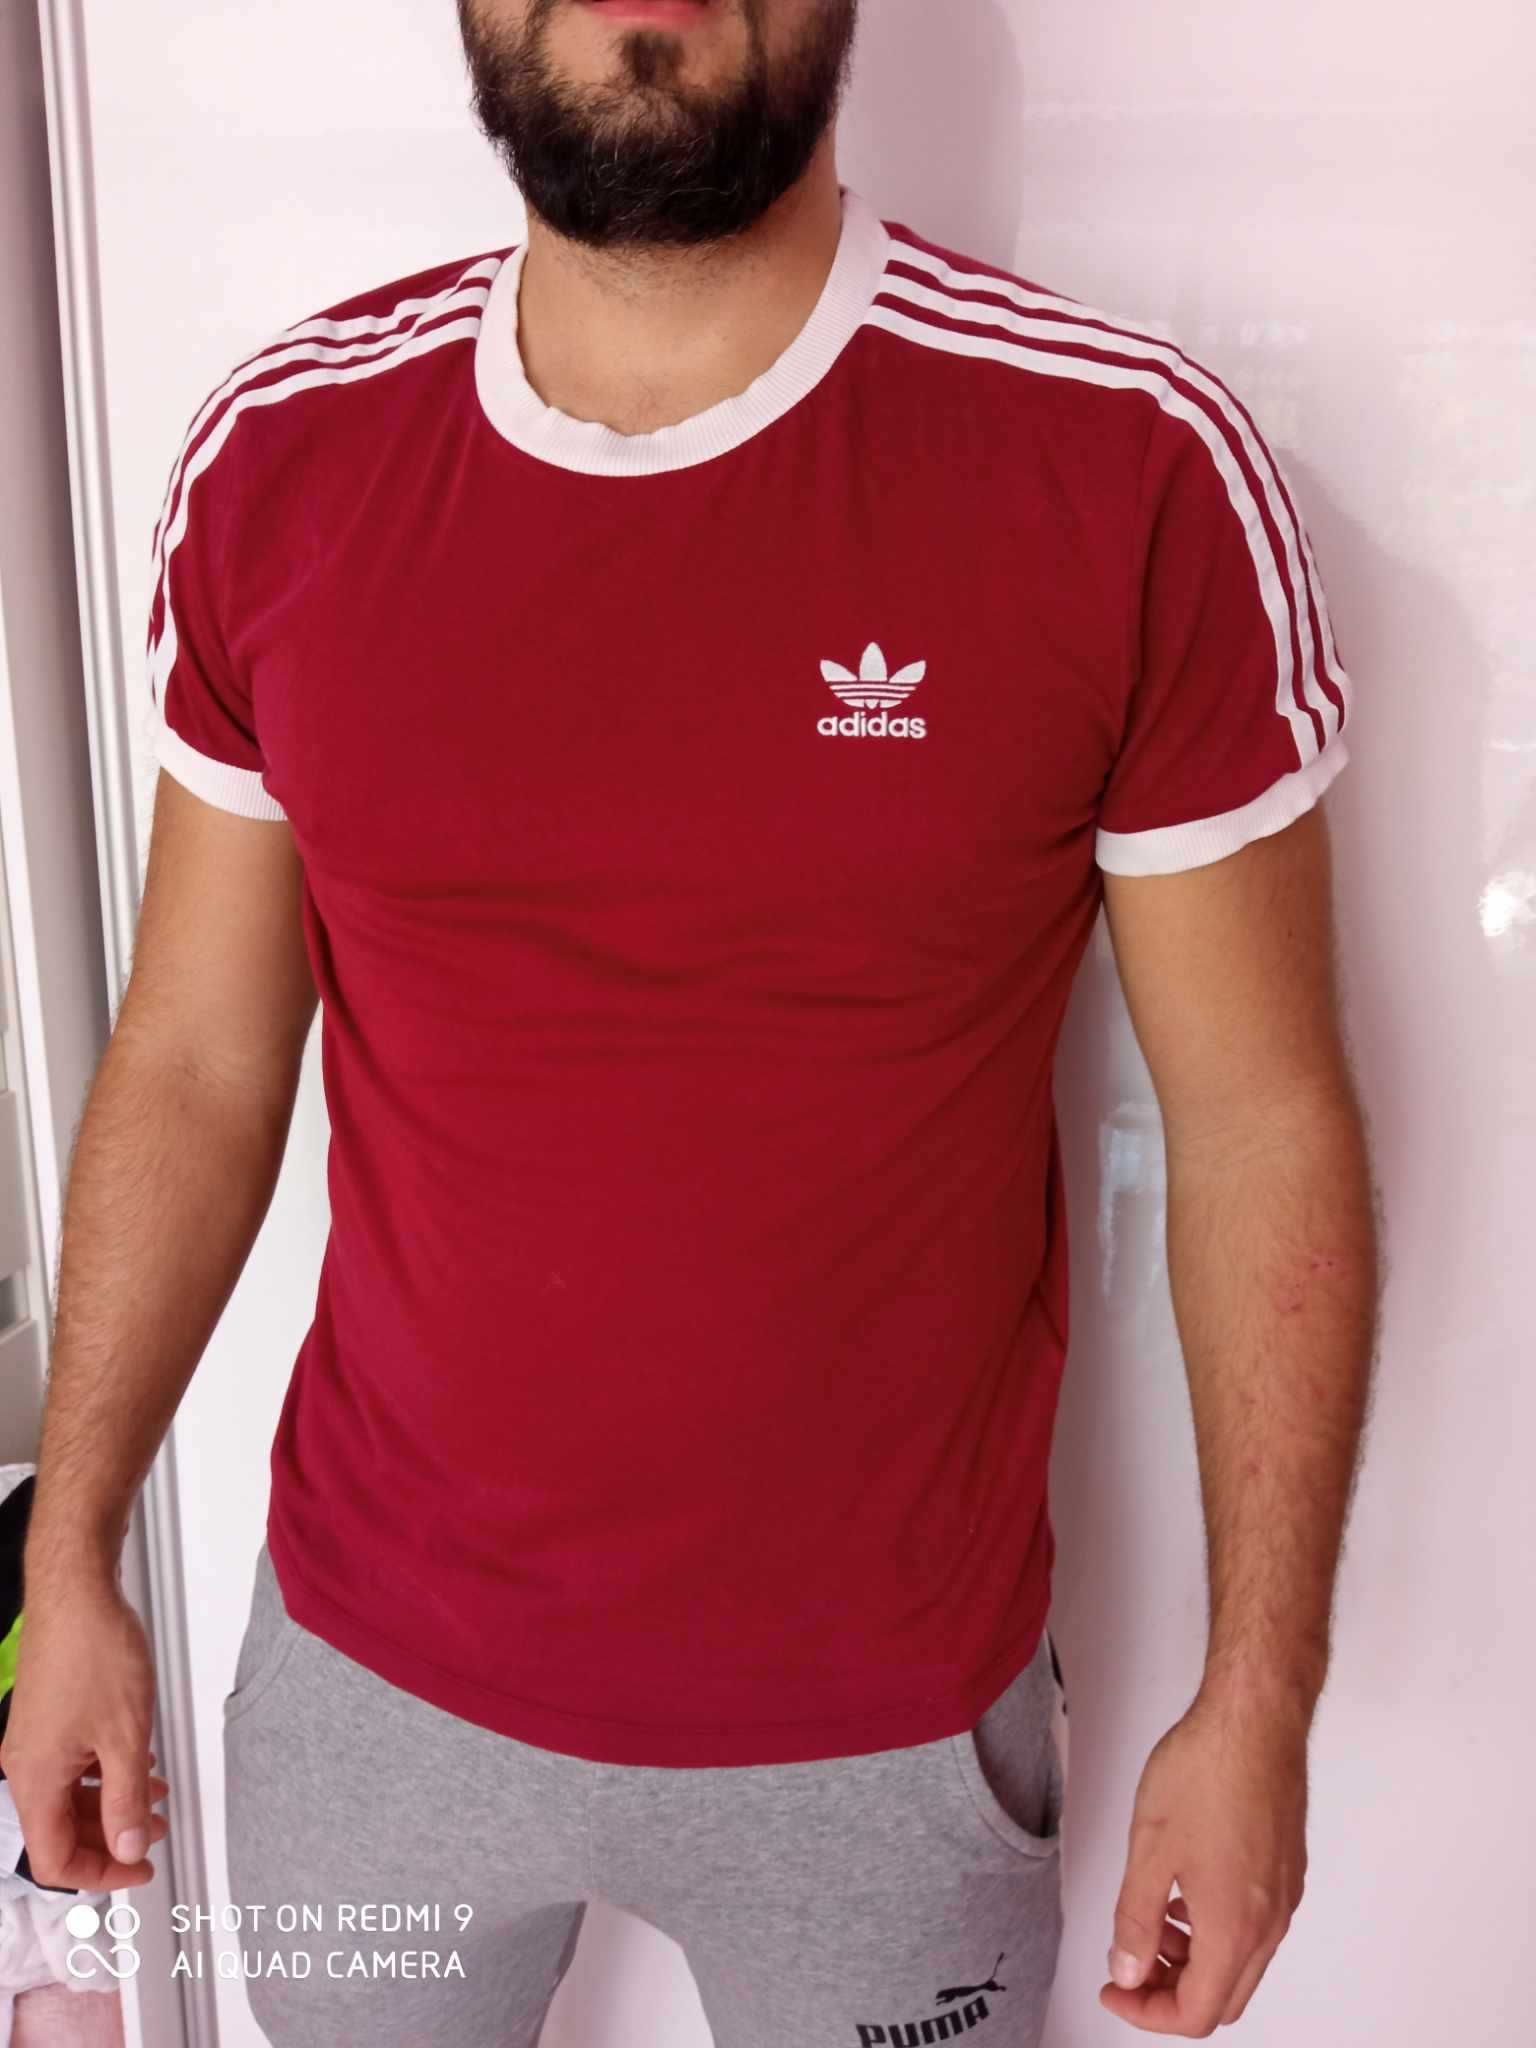 Koszulka męska Adidas, rozmiar L, oryginalna, stan idealny